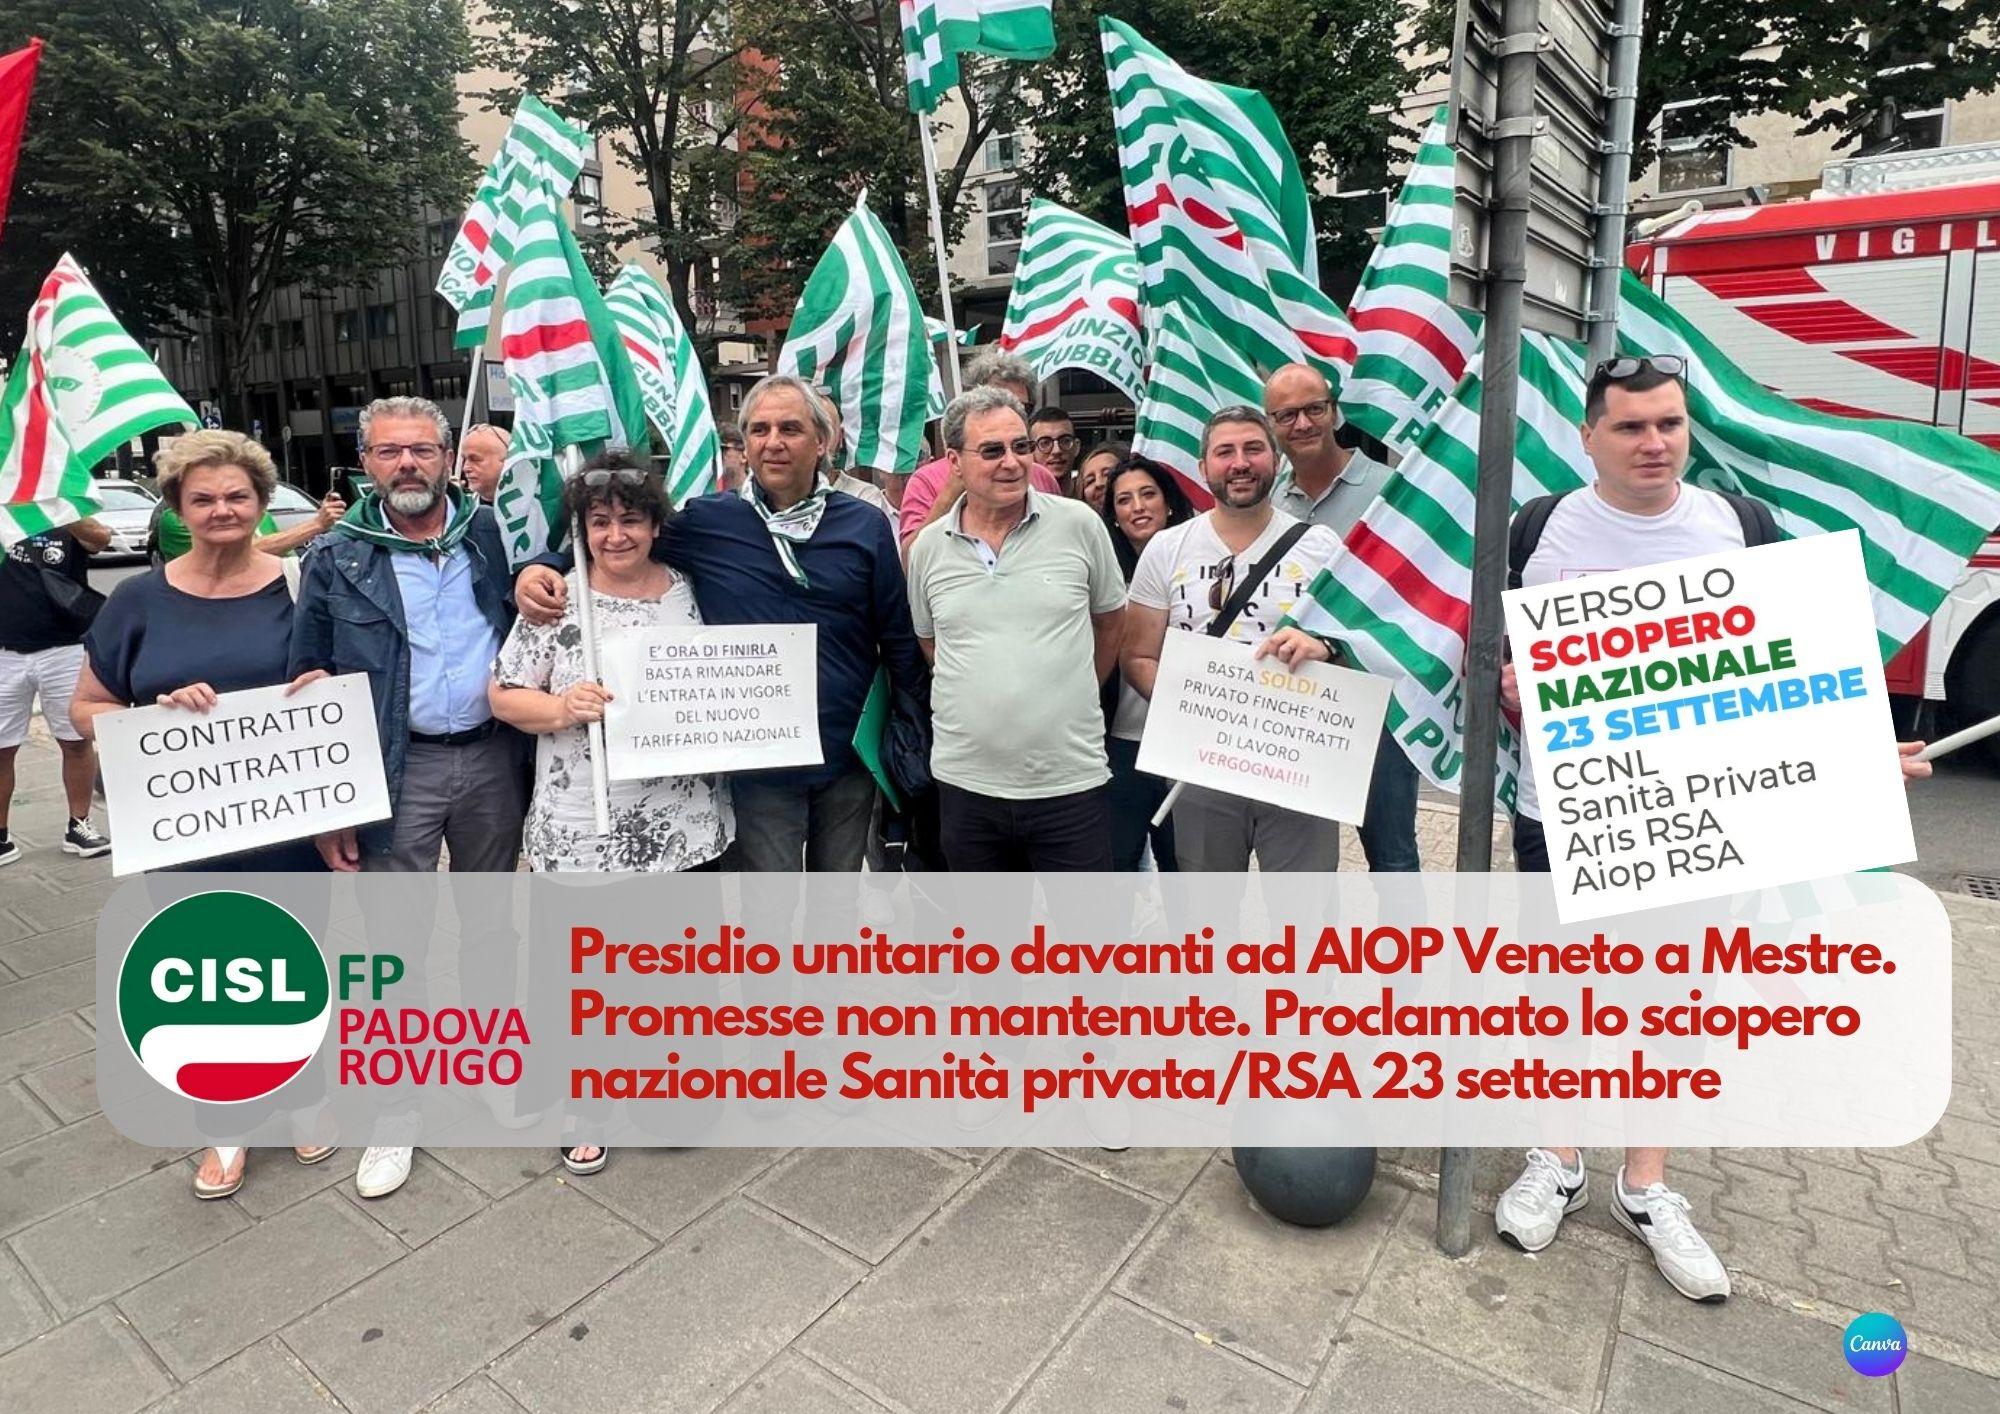 CISL FP Padova Rovigo. Presidio presso unitario presso AIOP Veneto. Verso lo sciopero del 23 settembre